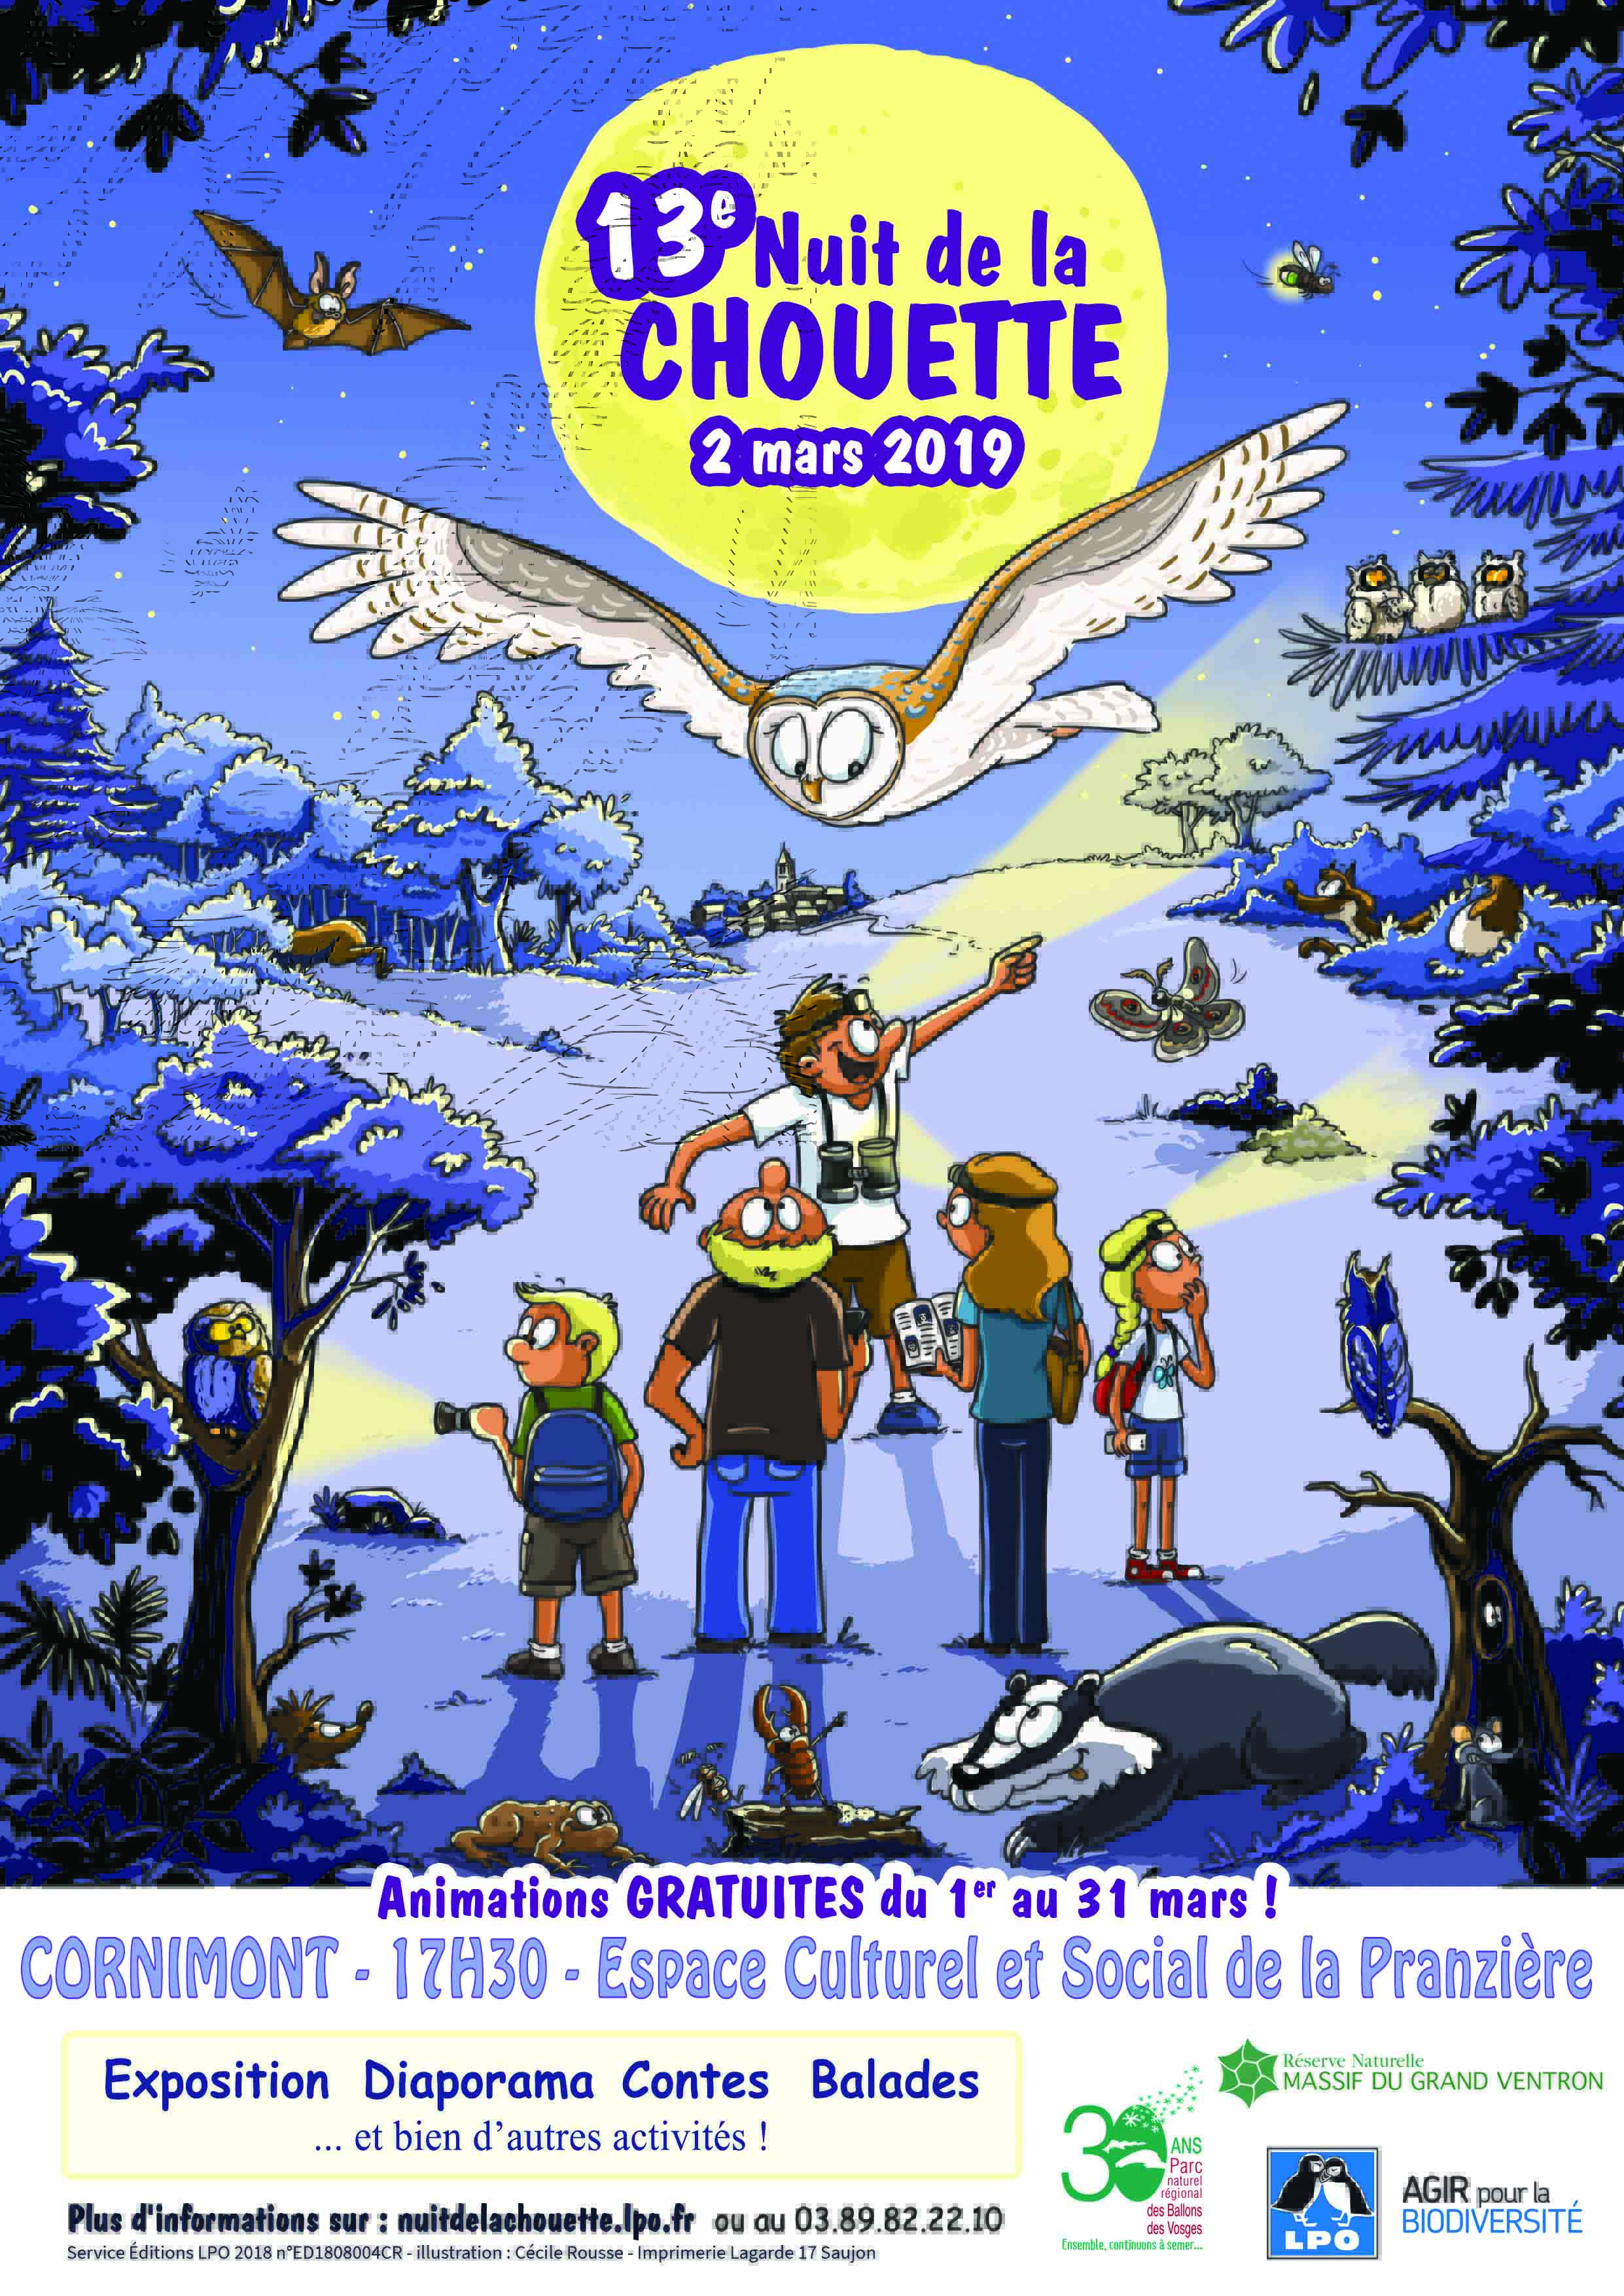 Le samedi 02 mars prochain aura lieu la 13Ã¨me Ã©dition de Nuit de de la Chouette.